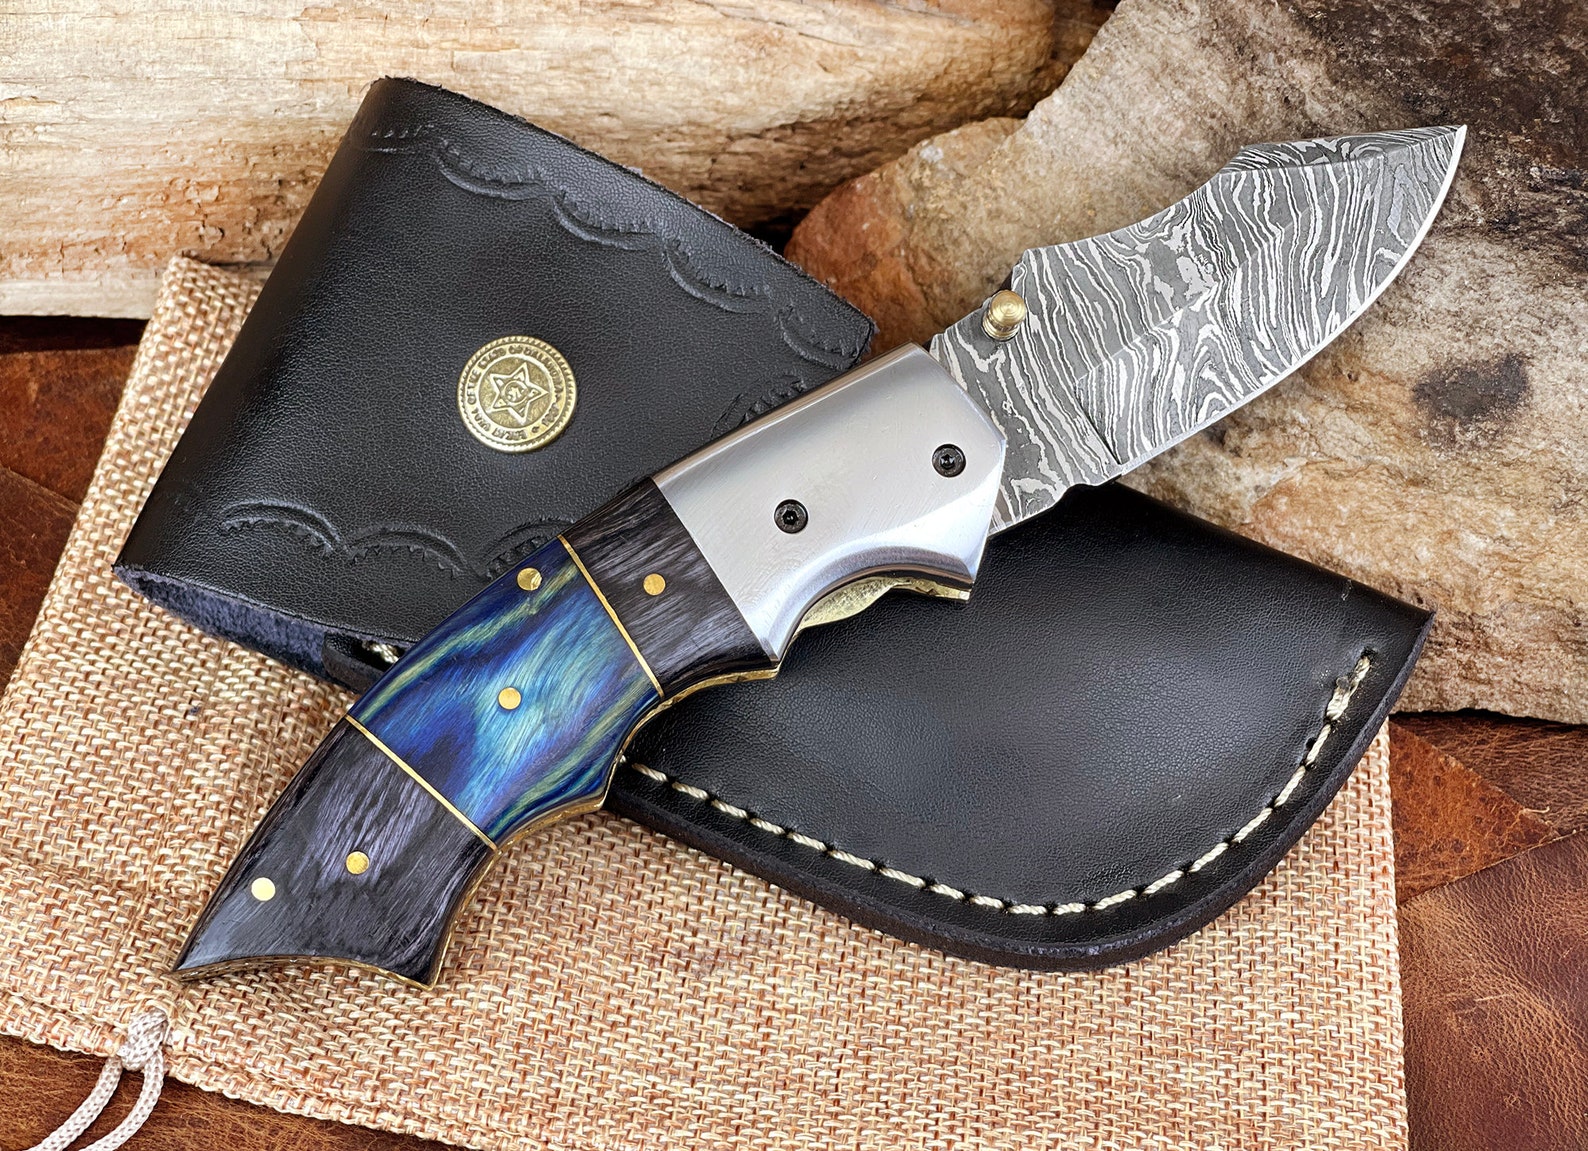 Damascus Steel Folding Pocket Knife Handmade Custom Gift - Etsy